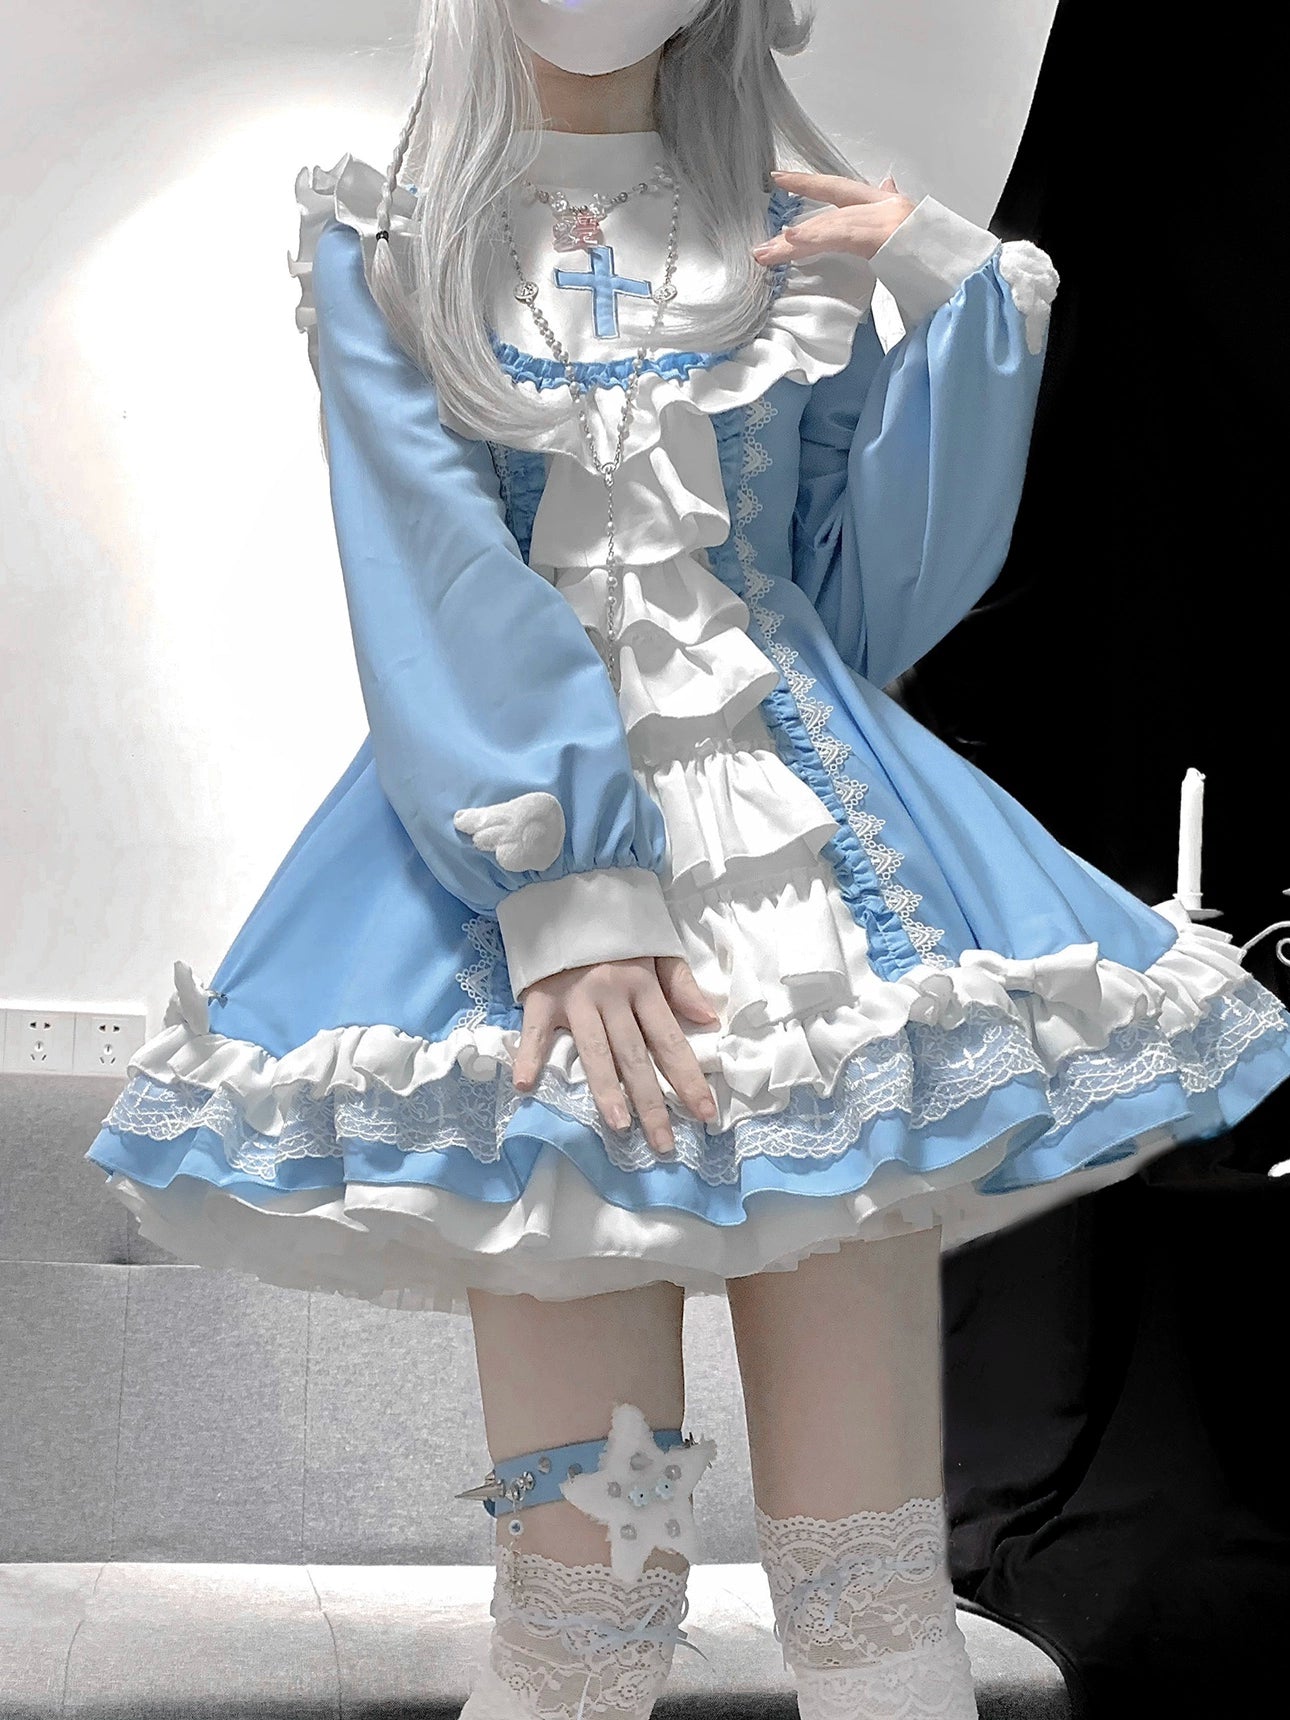 Medical Nun Lolita Dress Subculture Cross Prayer Blue Dress 37466:561288